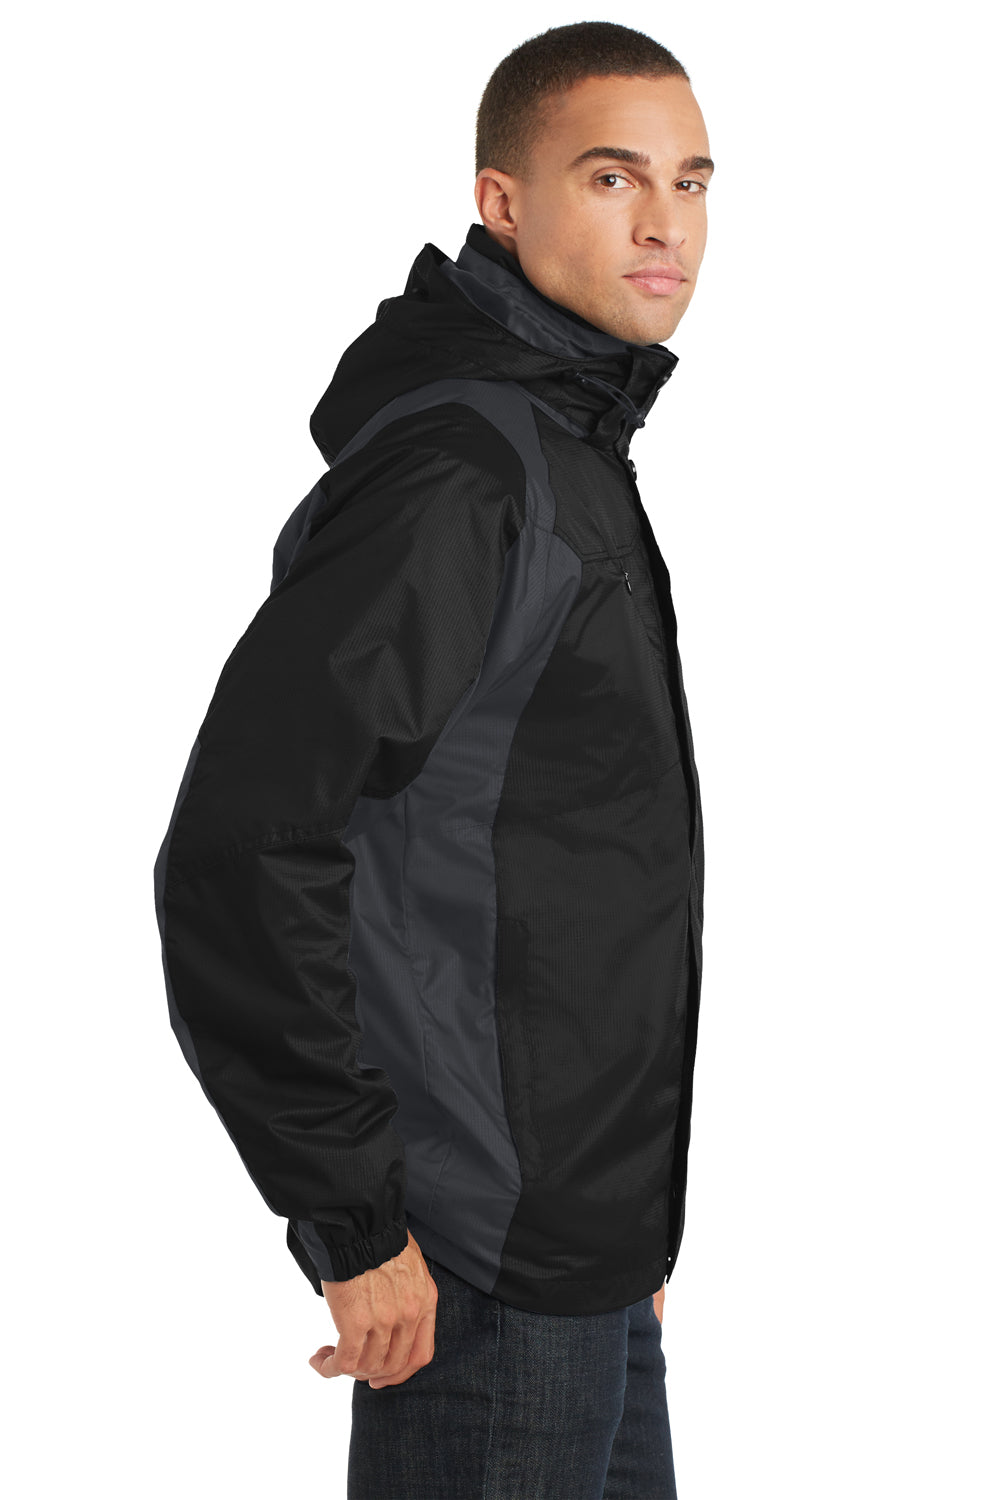 Port Authority J310 Mens Ranger 3-in-1 Waterproof Full Zip Hooded Jacket Black/Ink Grey Side